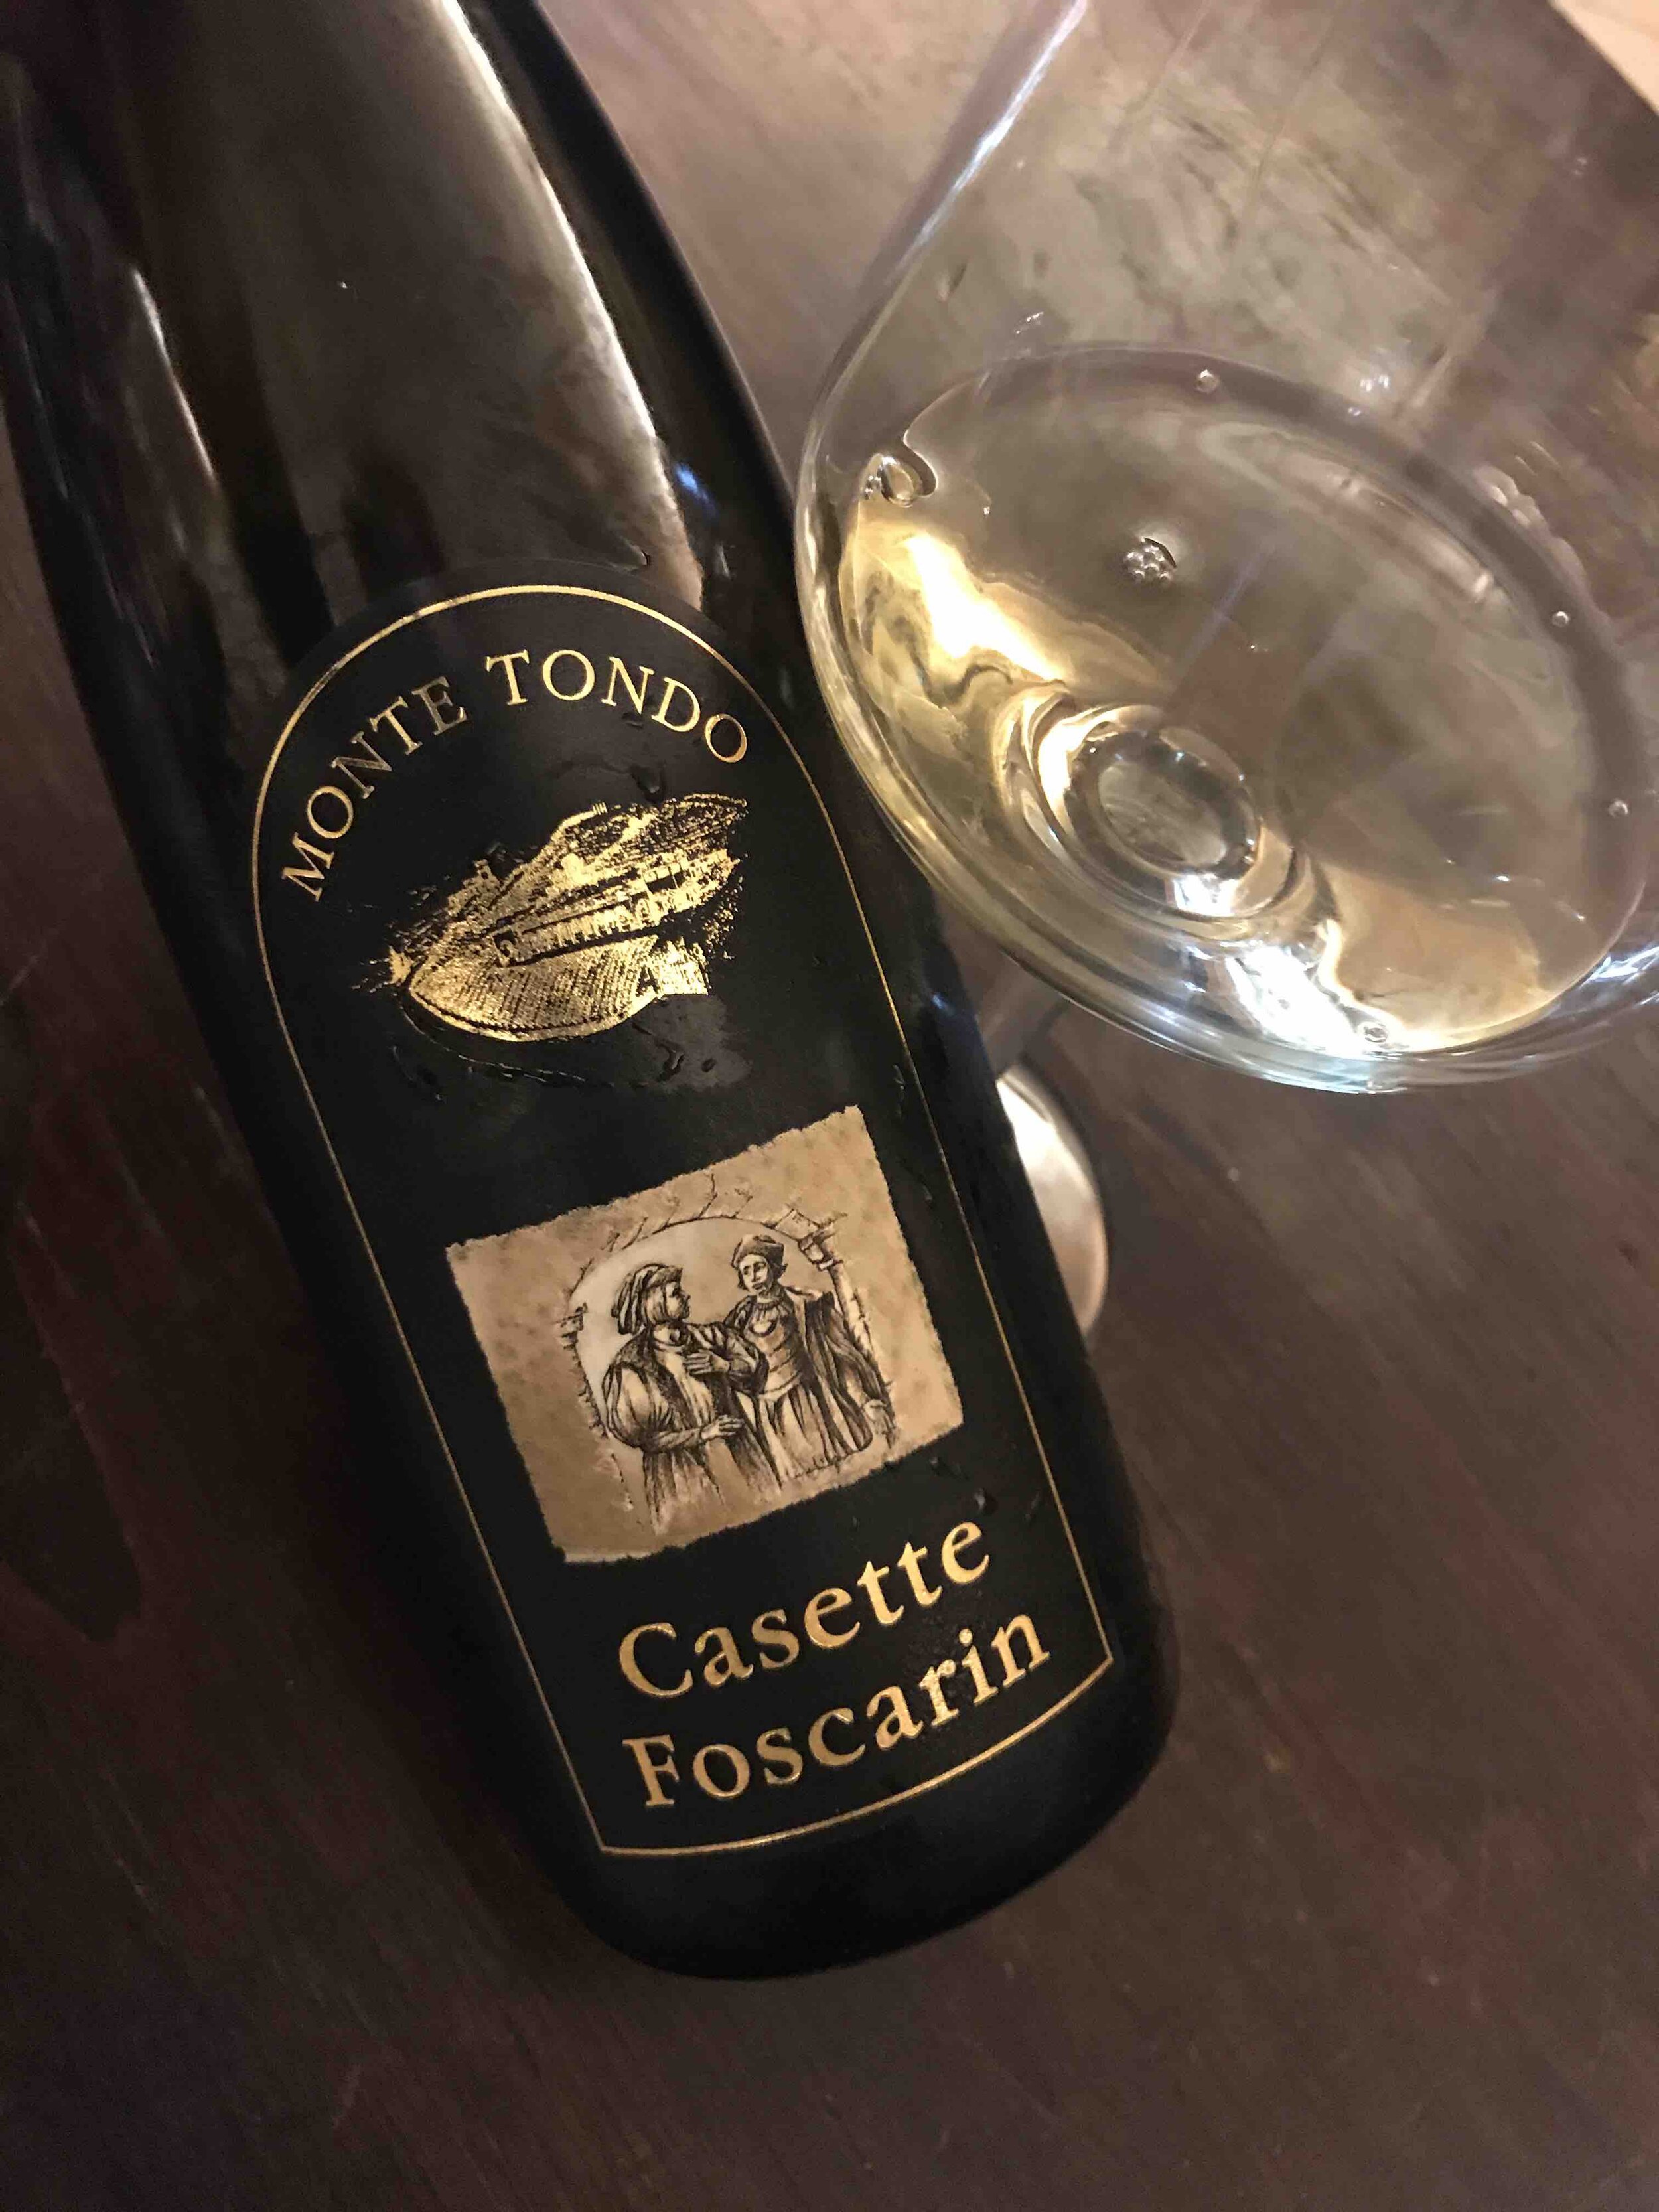 Monte Tondo Casette Foscarin 2016 Flaskevis (C) Thomas Bohl.jpg